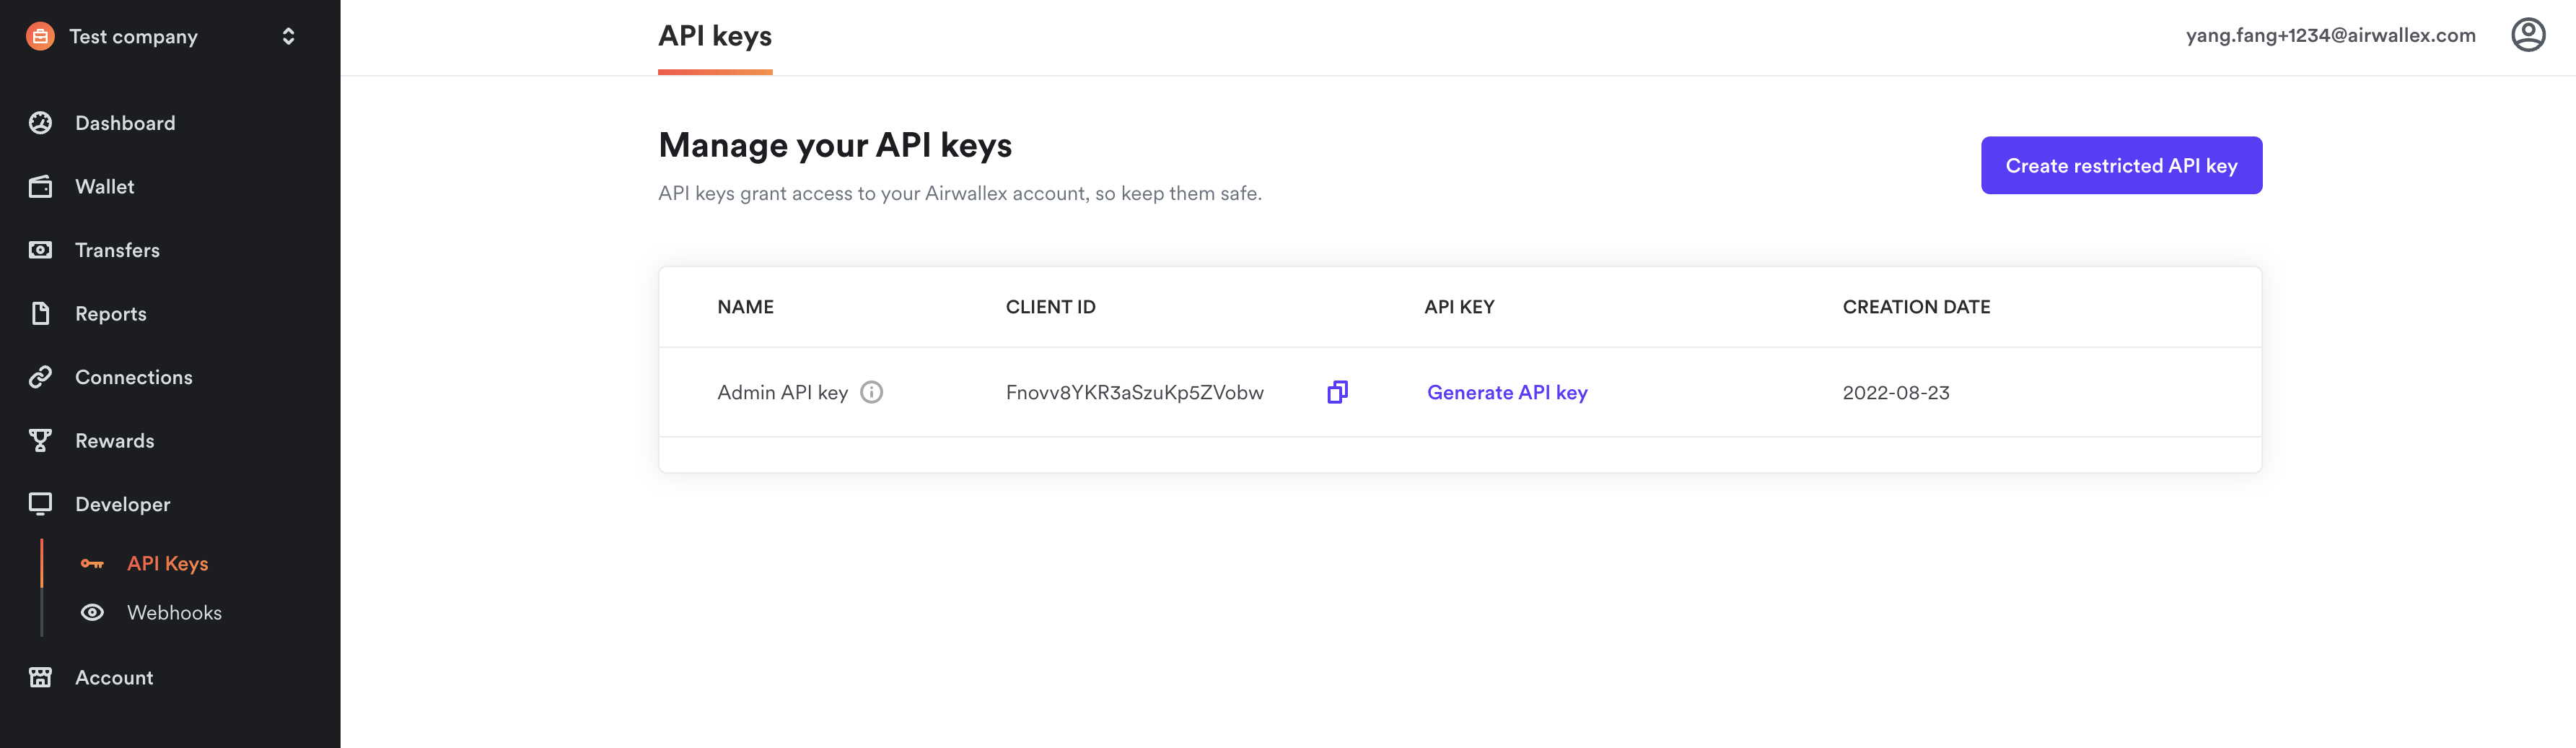 Retrieve API keys